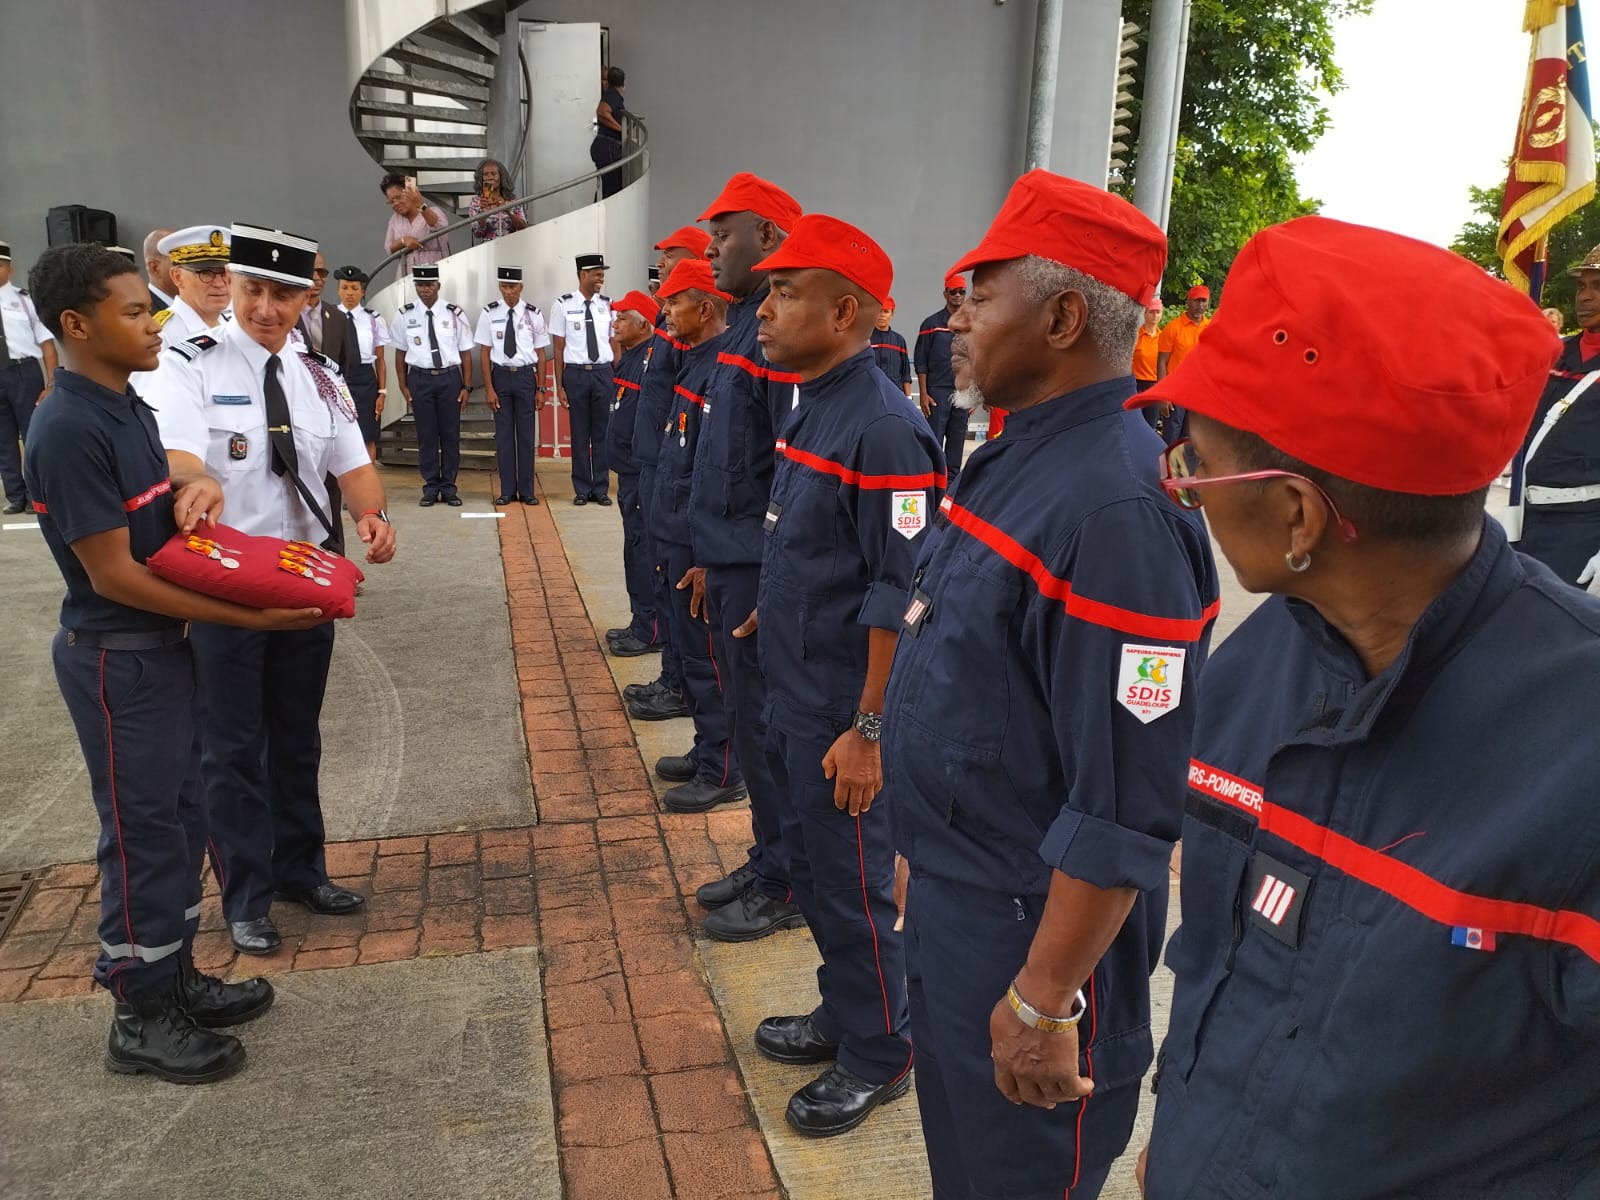     Journée nationale des pompiers : « les soldats de la vie » honorés en Guadeloupe 

